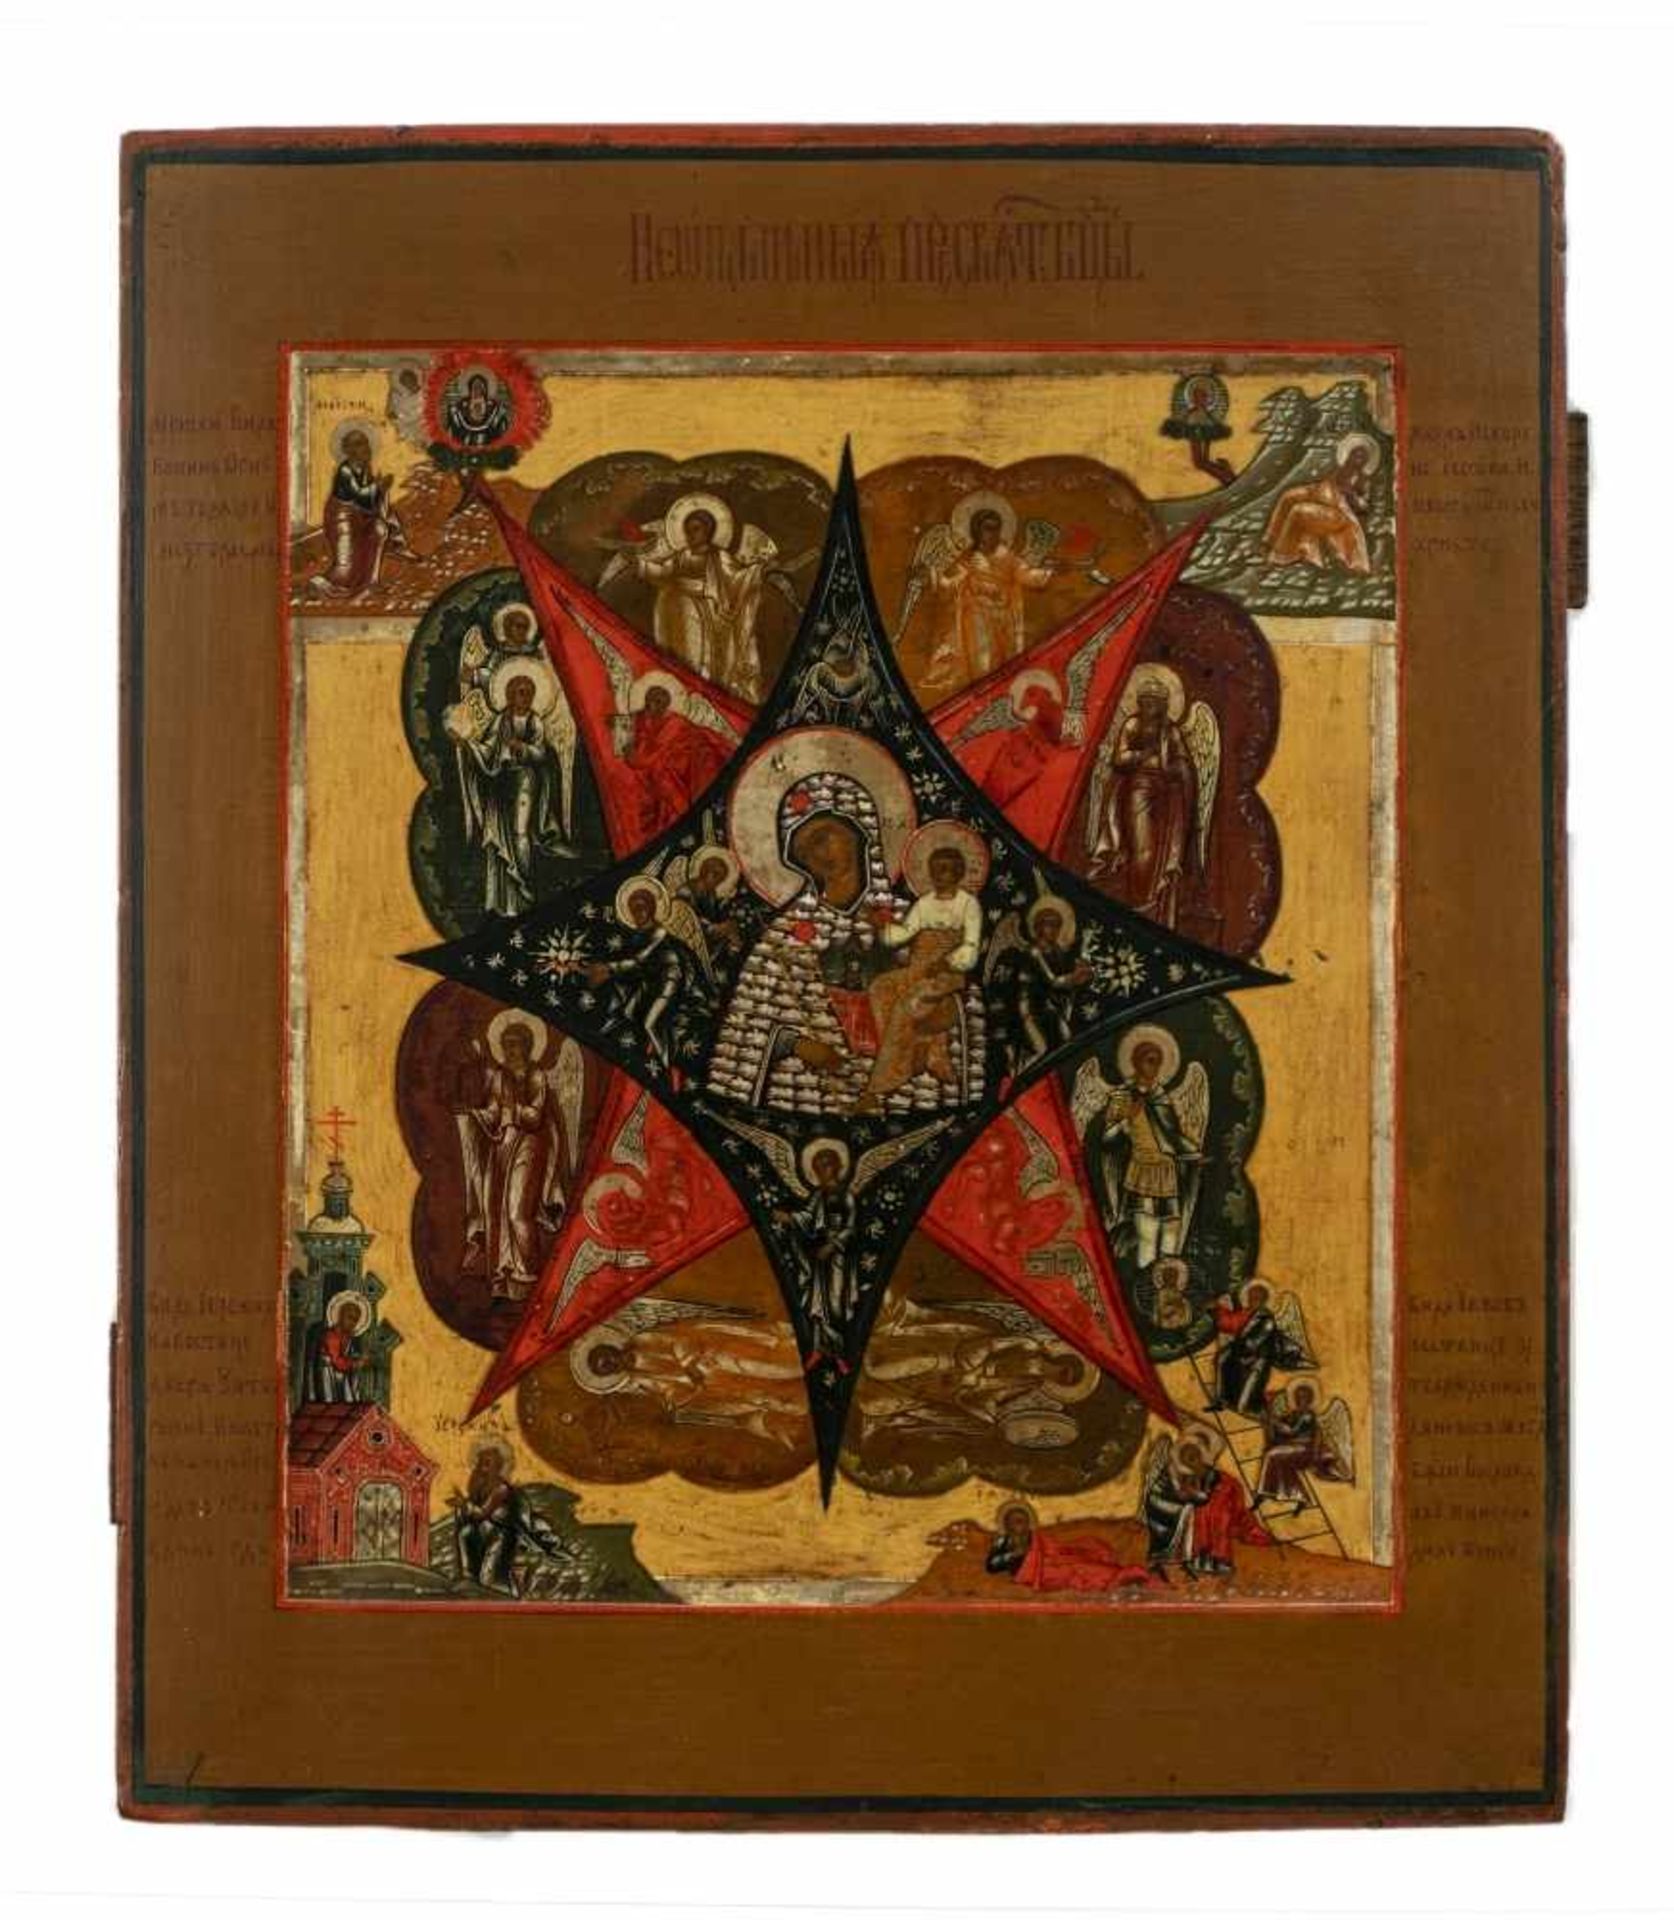 Gottesmutter "Unverbrennbarer Dornbusch"Russische Ikone, Tempera / Holz, um 185031 x 26,6 cmIn der